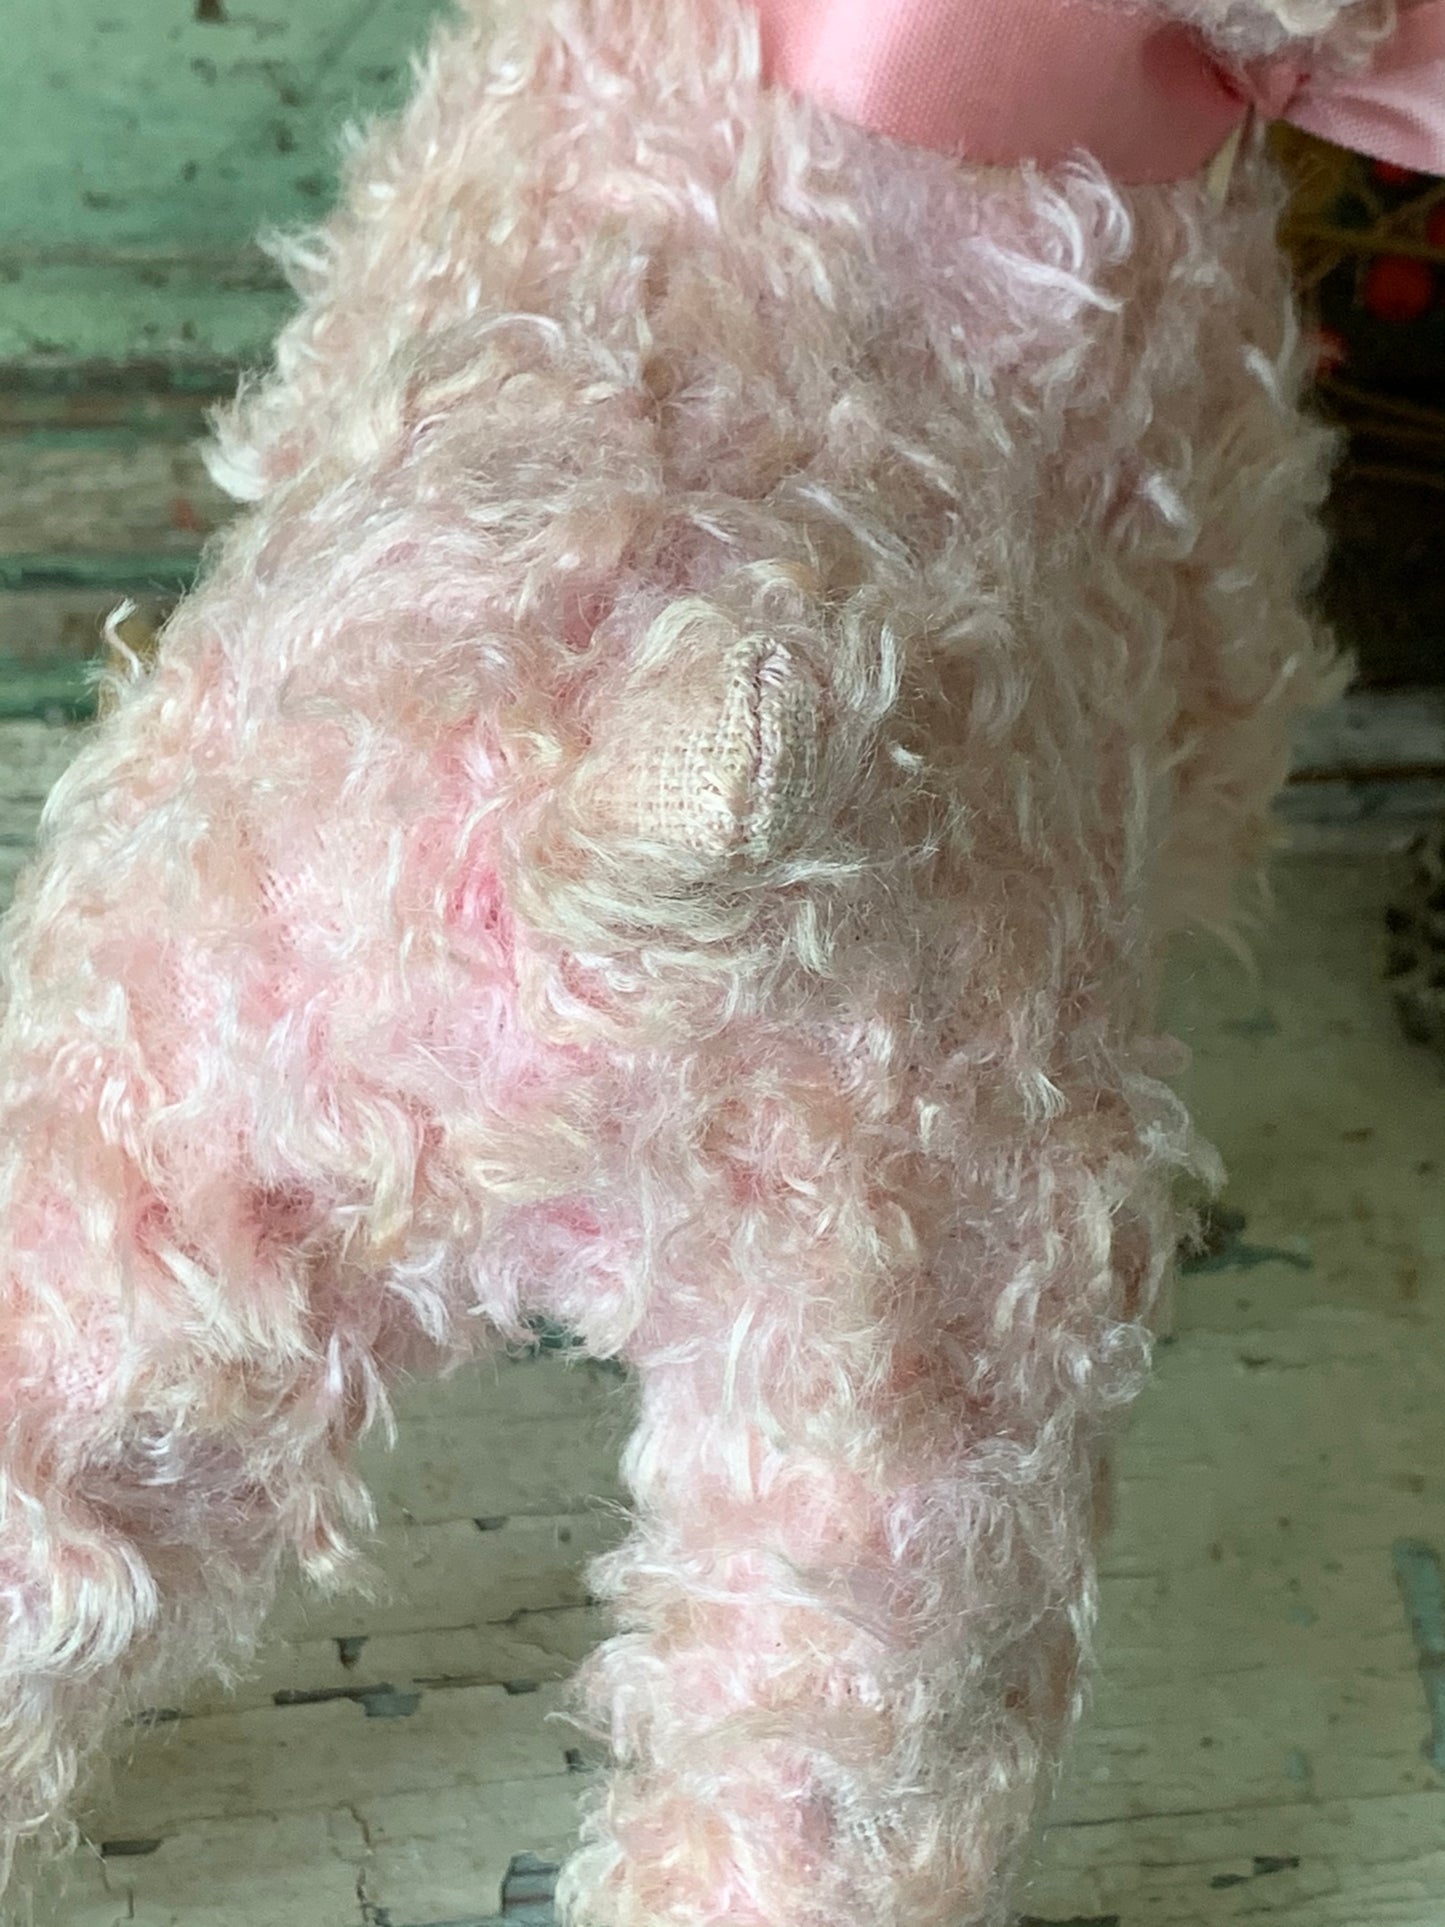 Vintage small Rushton pink lamb